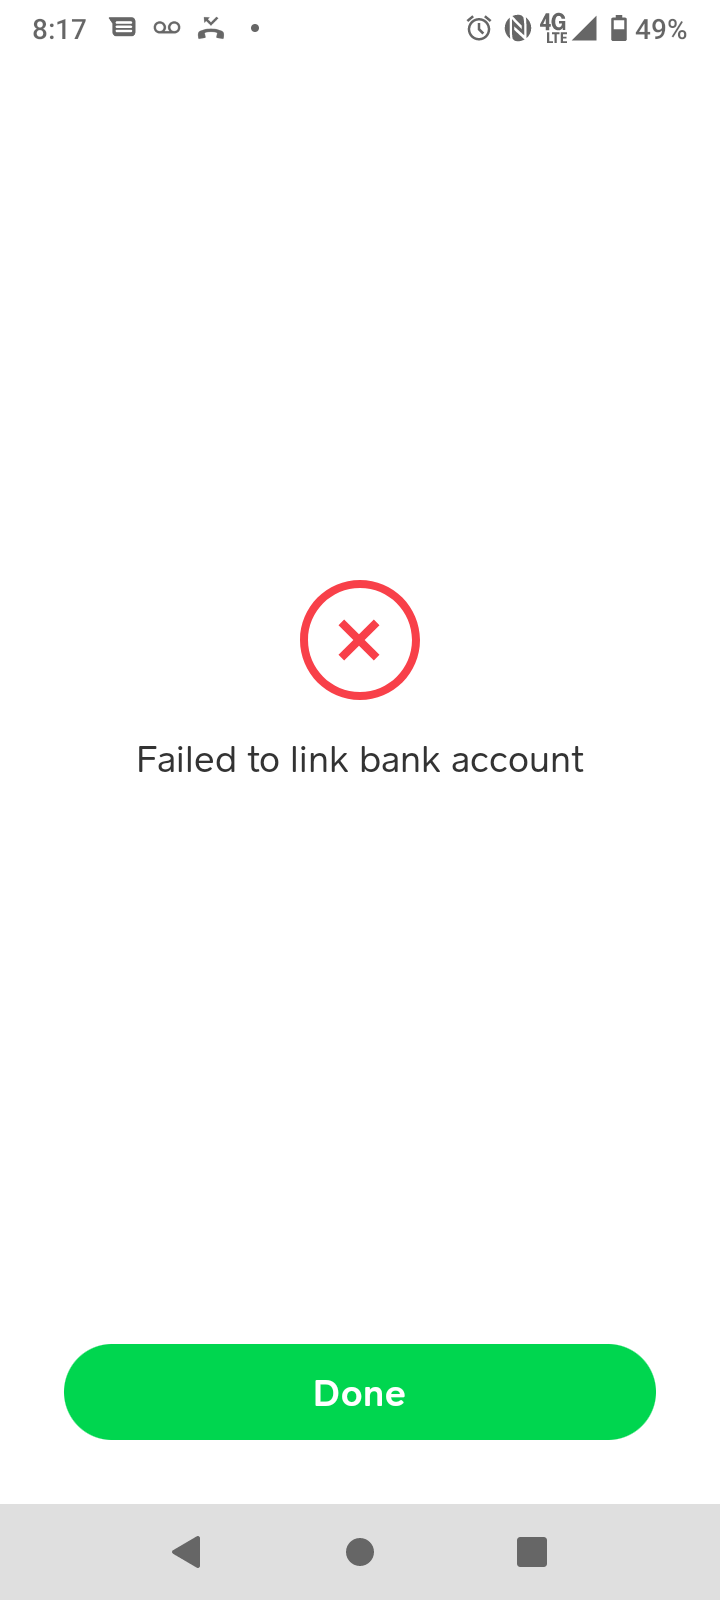 Cash App complaint My funds are frozen, cash support no help